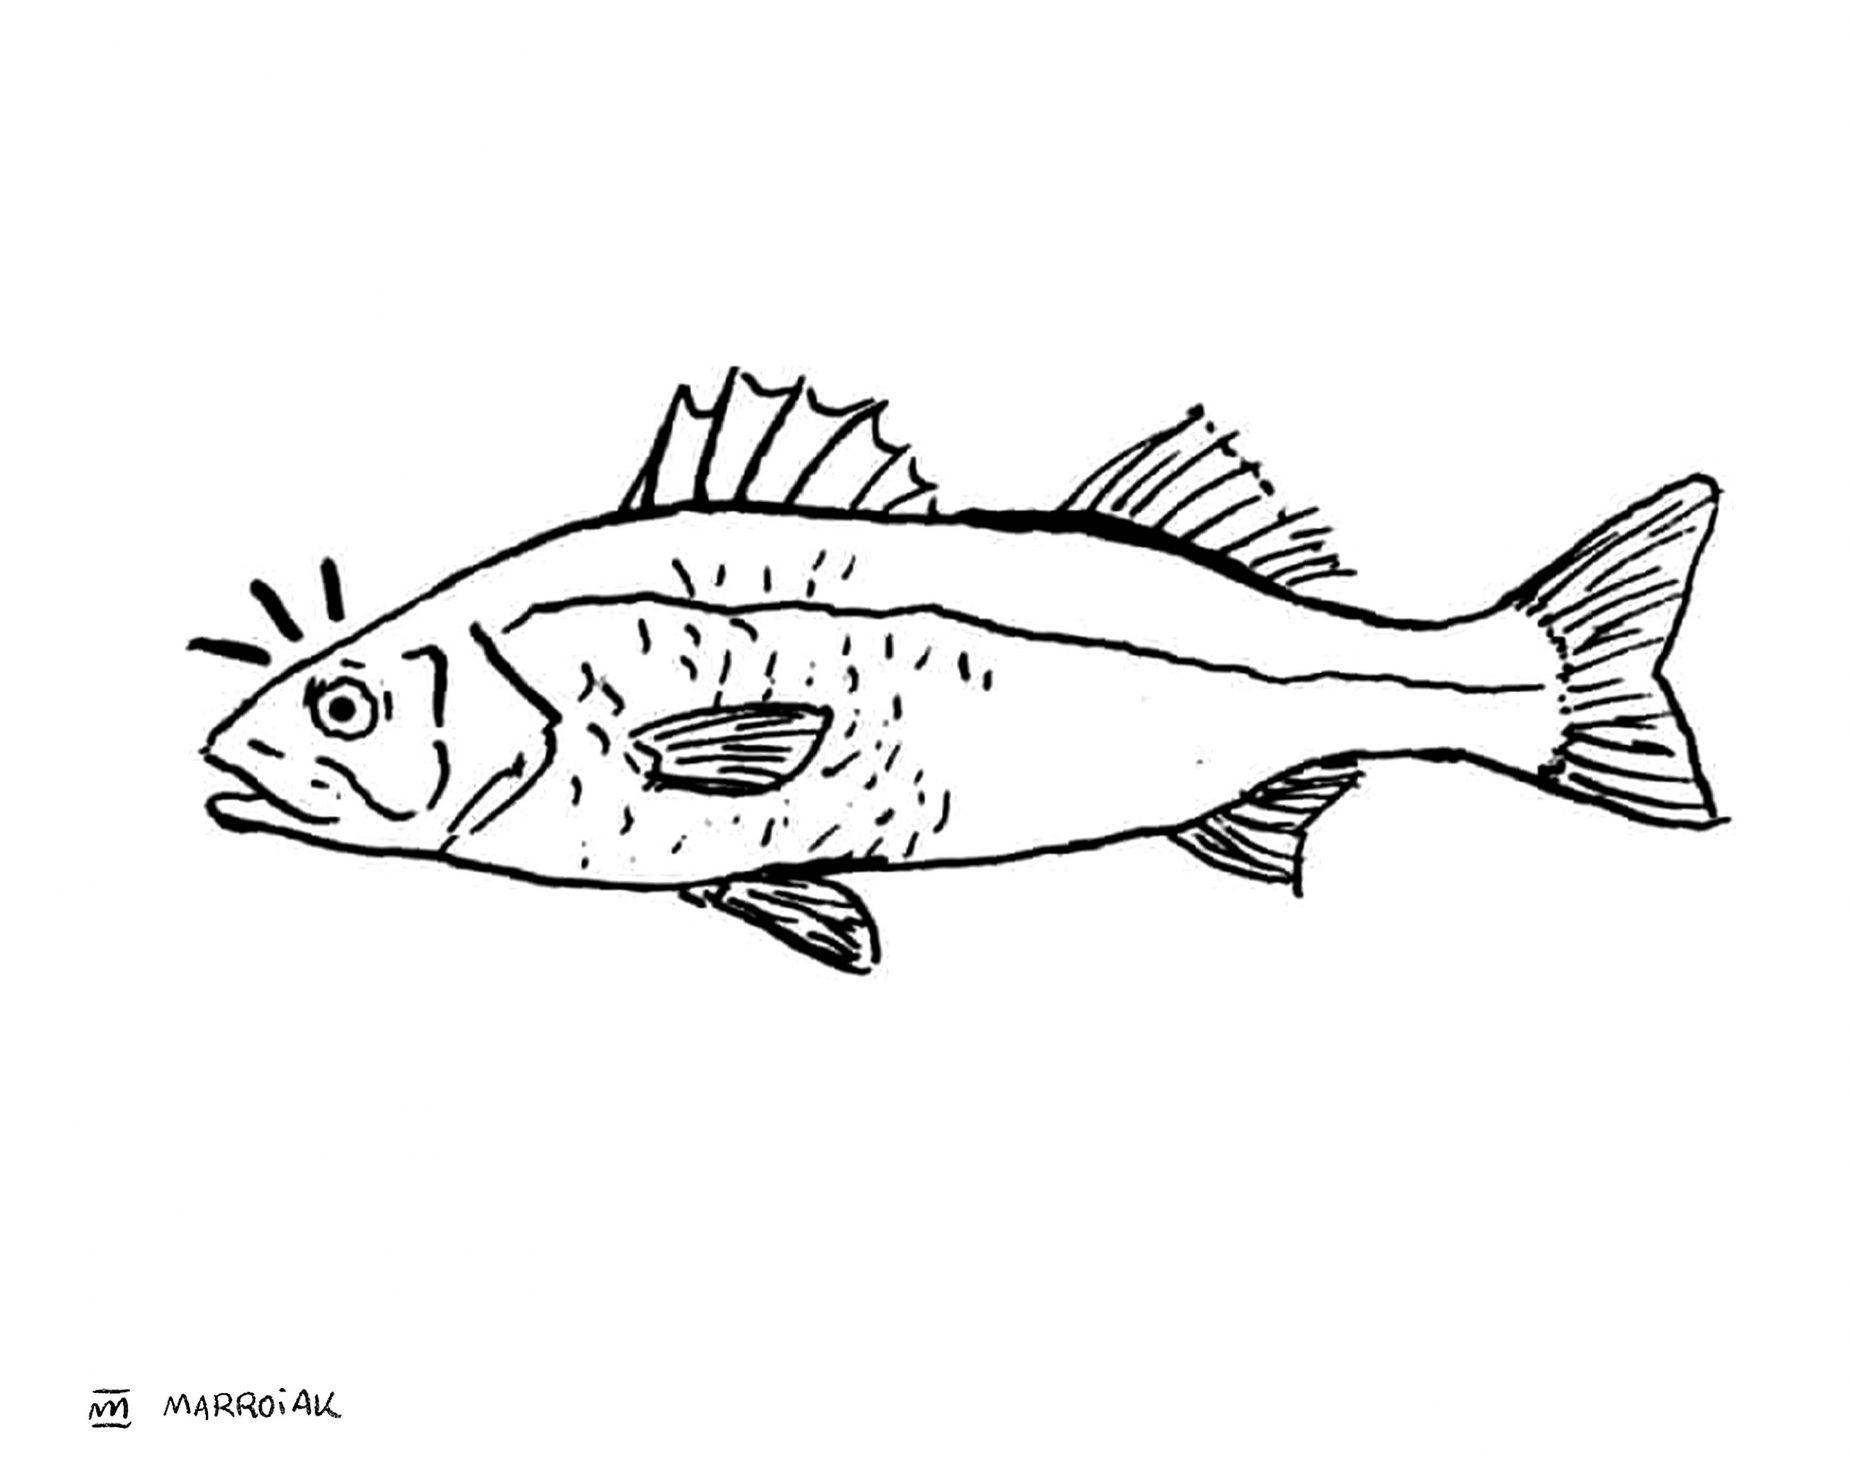 Dibujo lubina (Dicentrarchus labrax - llobarro) ilustración de animales